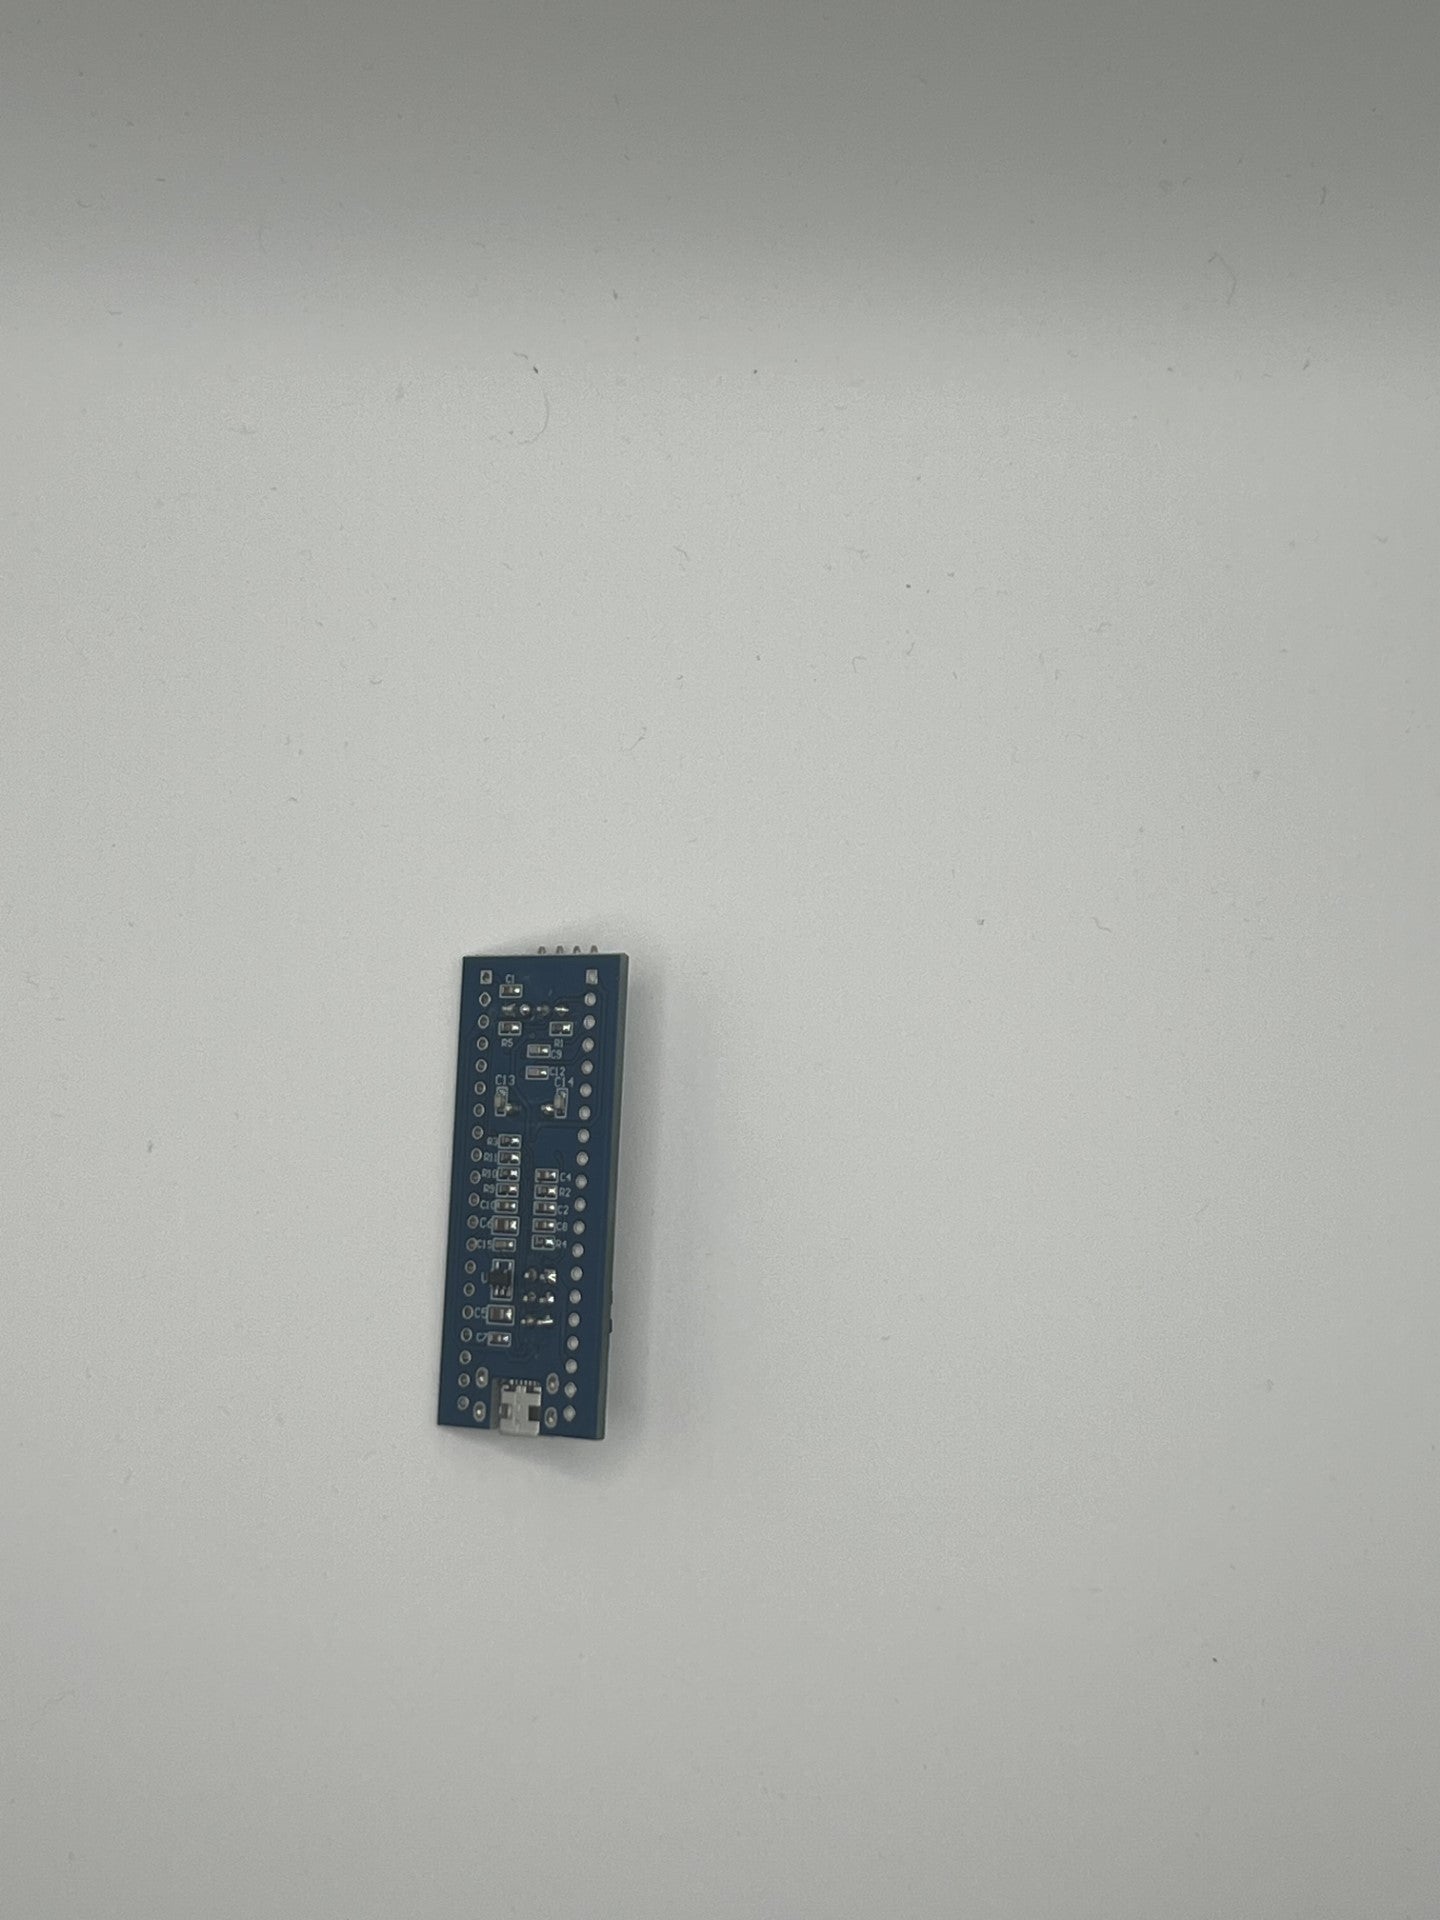 Bluepill Minimum Micro USB System Development Board.